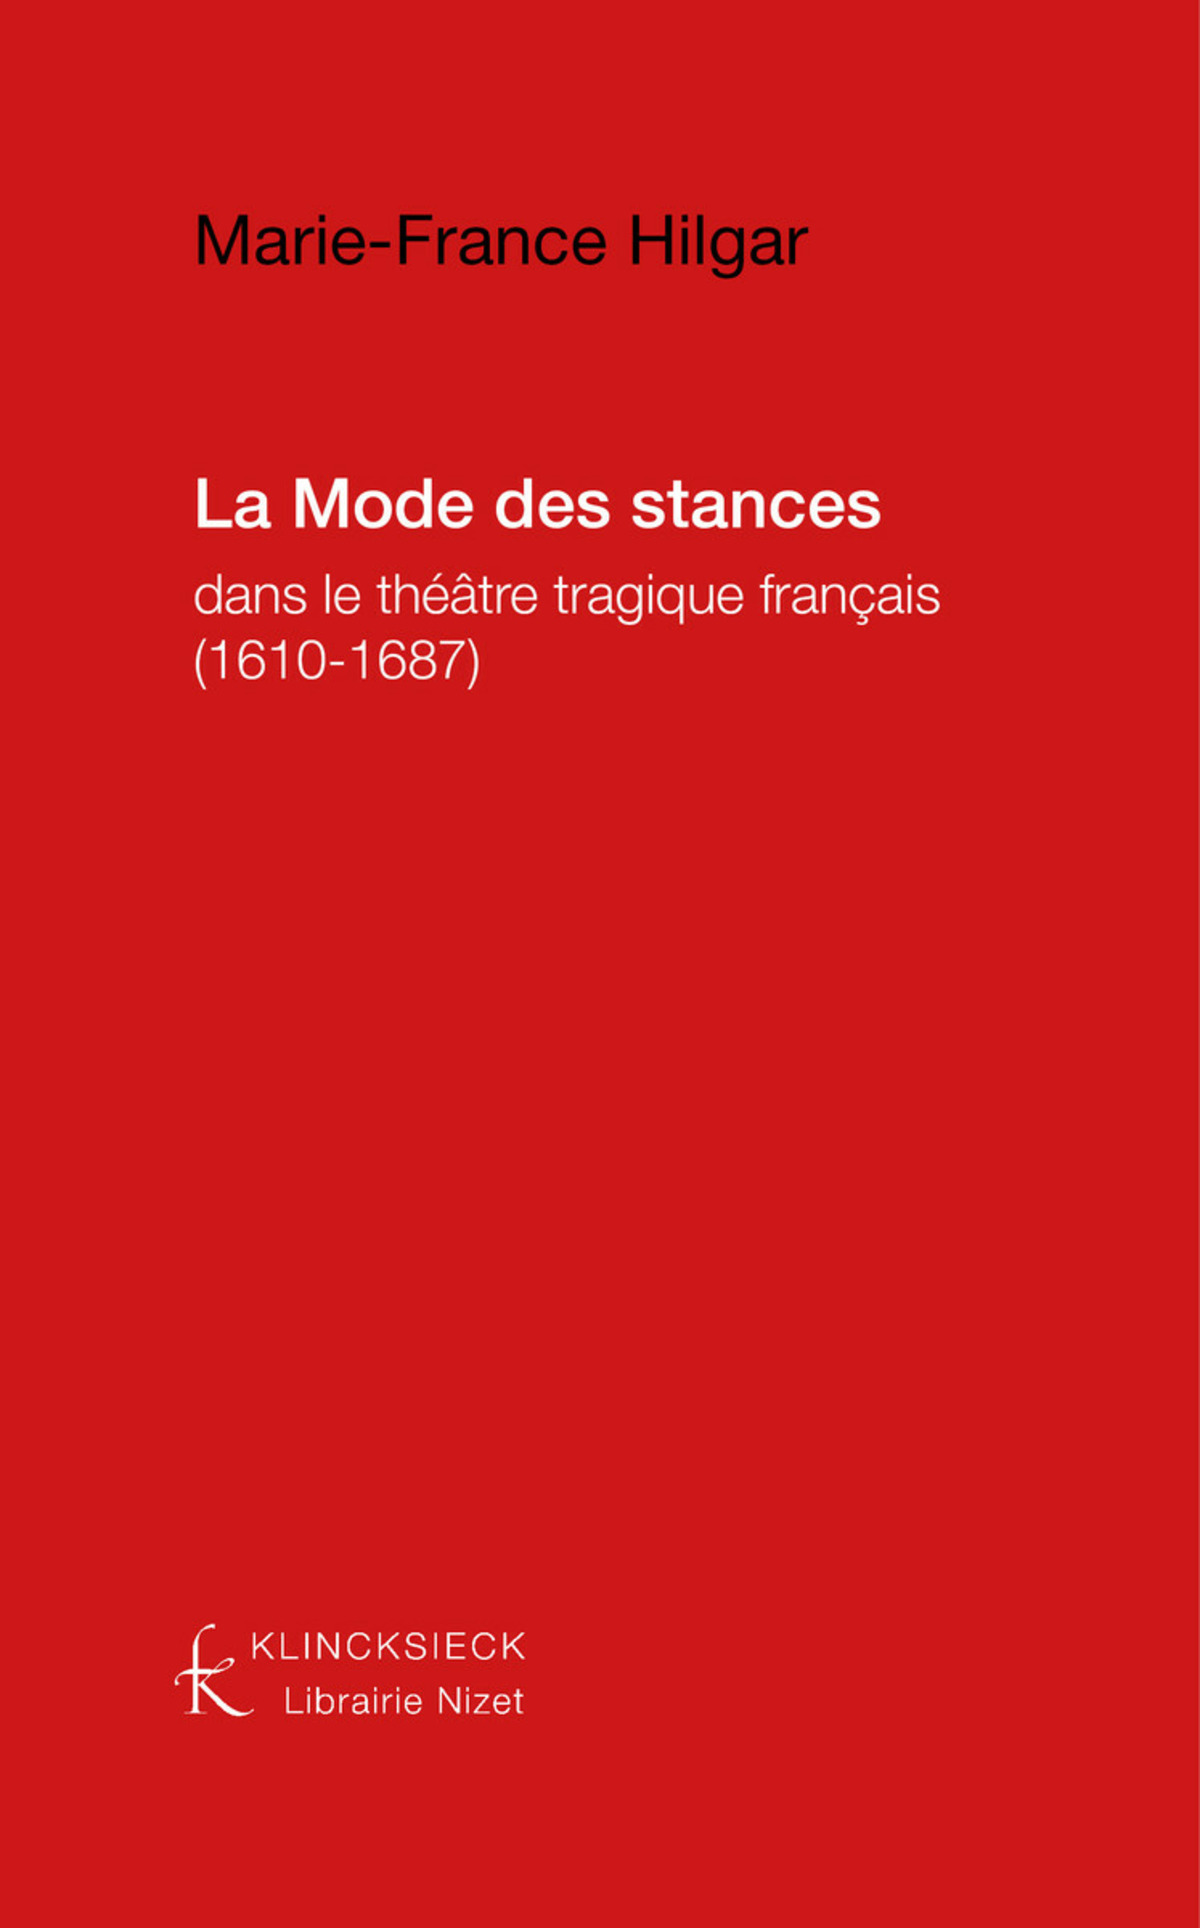 La Mode des stances dans le théâtre tragique français (1610-1687)